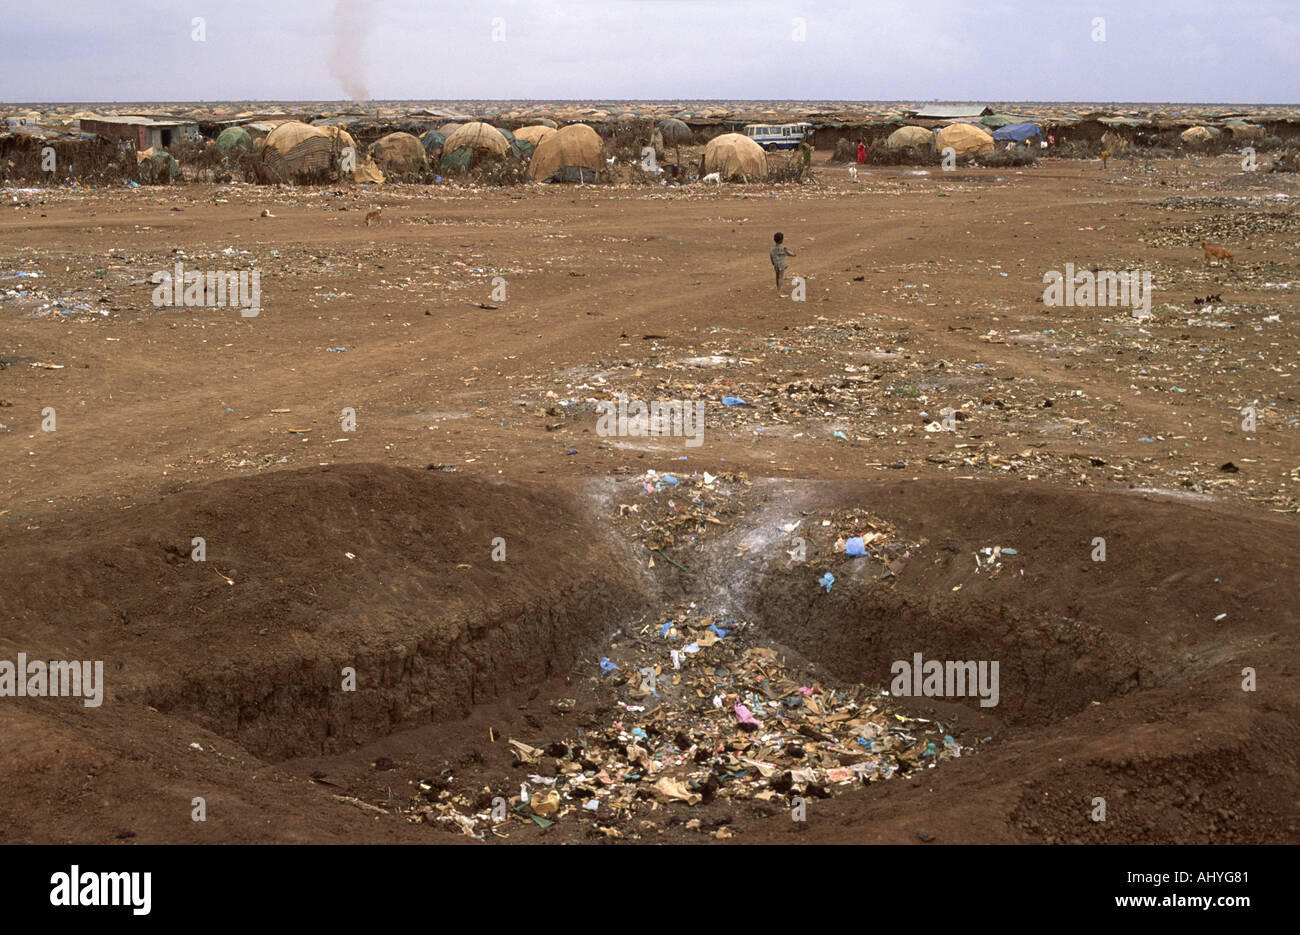 Vertedero de basura fuera de un campamento de refugiados somalíes en tierras áridas afectadas por la sequía en Somalia/ frontera etíope. Foto de stock